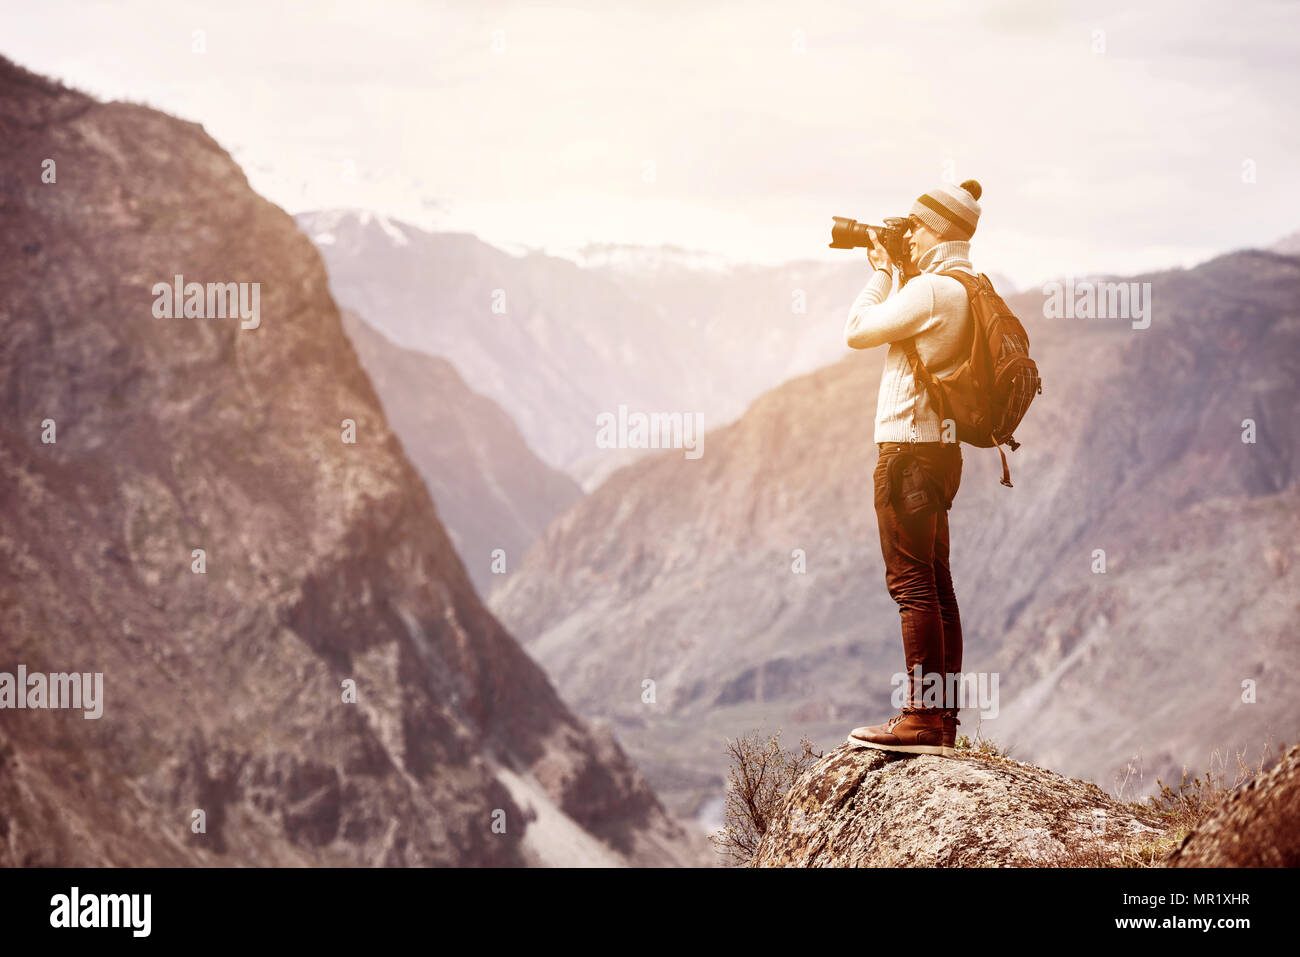 Photographe ou traveller se dresse sur big rock contre les montagnes et taking photo Banque D'Images